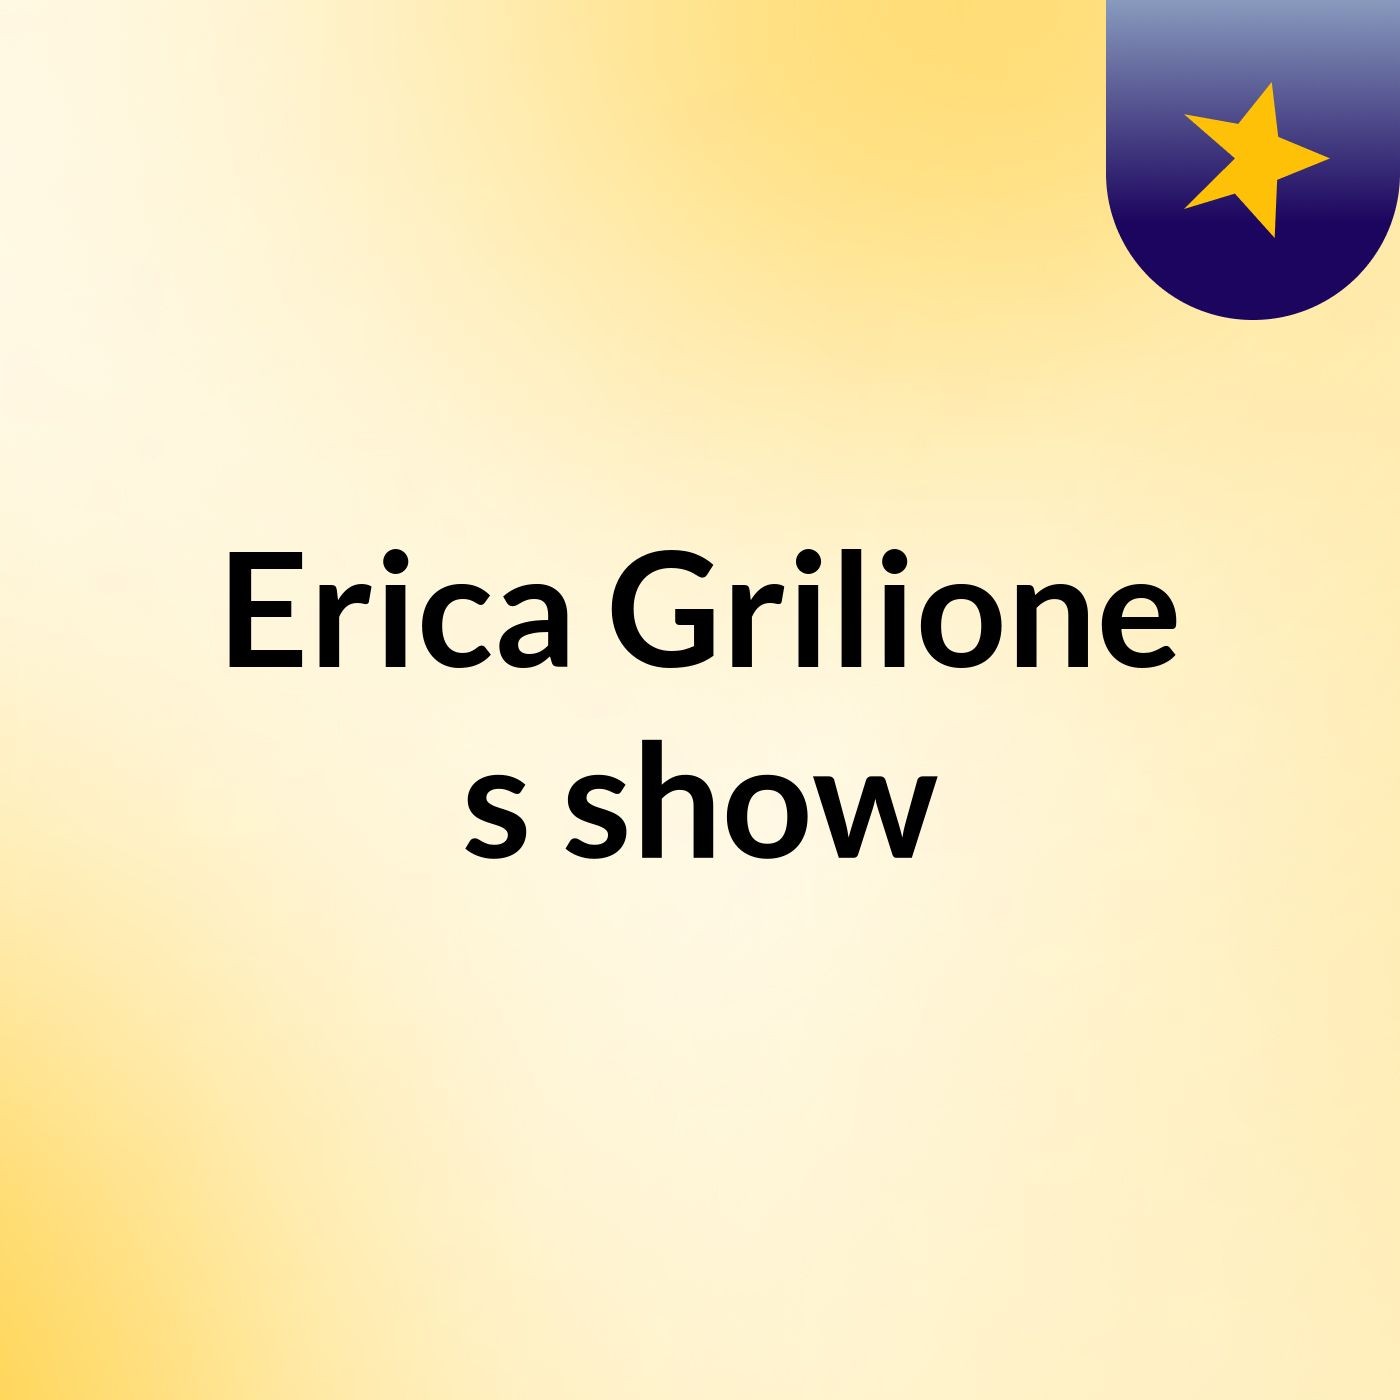 Erica Grilione's show